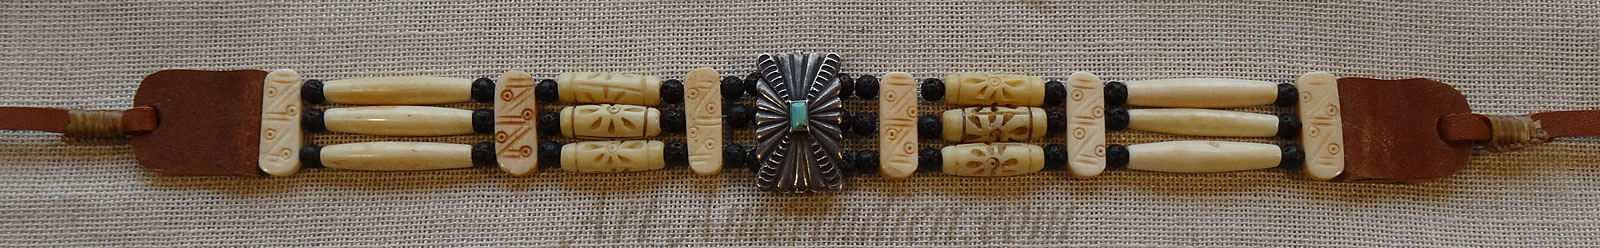 Collier ras de cou ou choker indien, perles en tubes d'os, perles de lave, orné d'un médaillon Navajo en argent et turquoise, lacet en cuir.